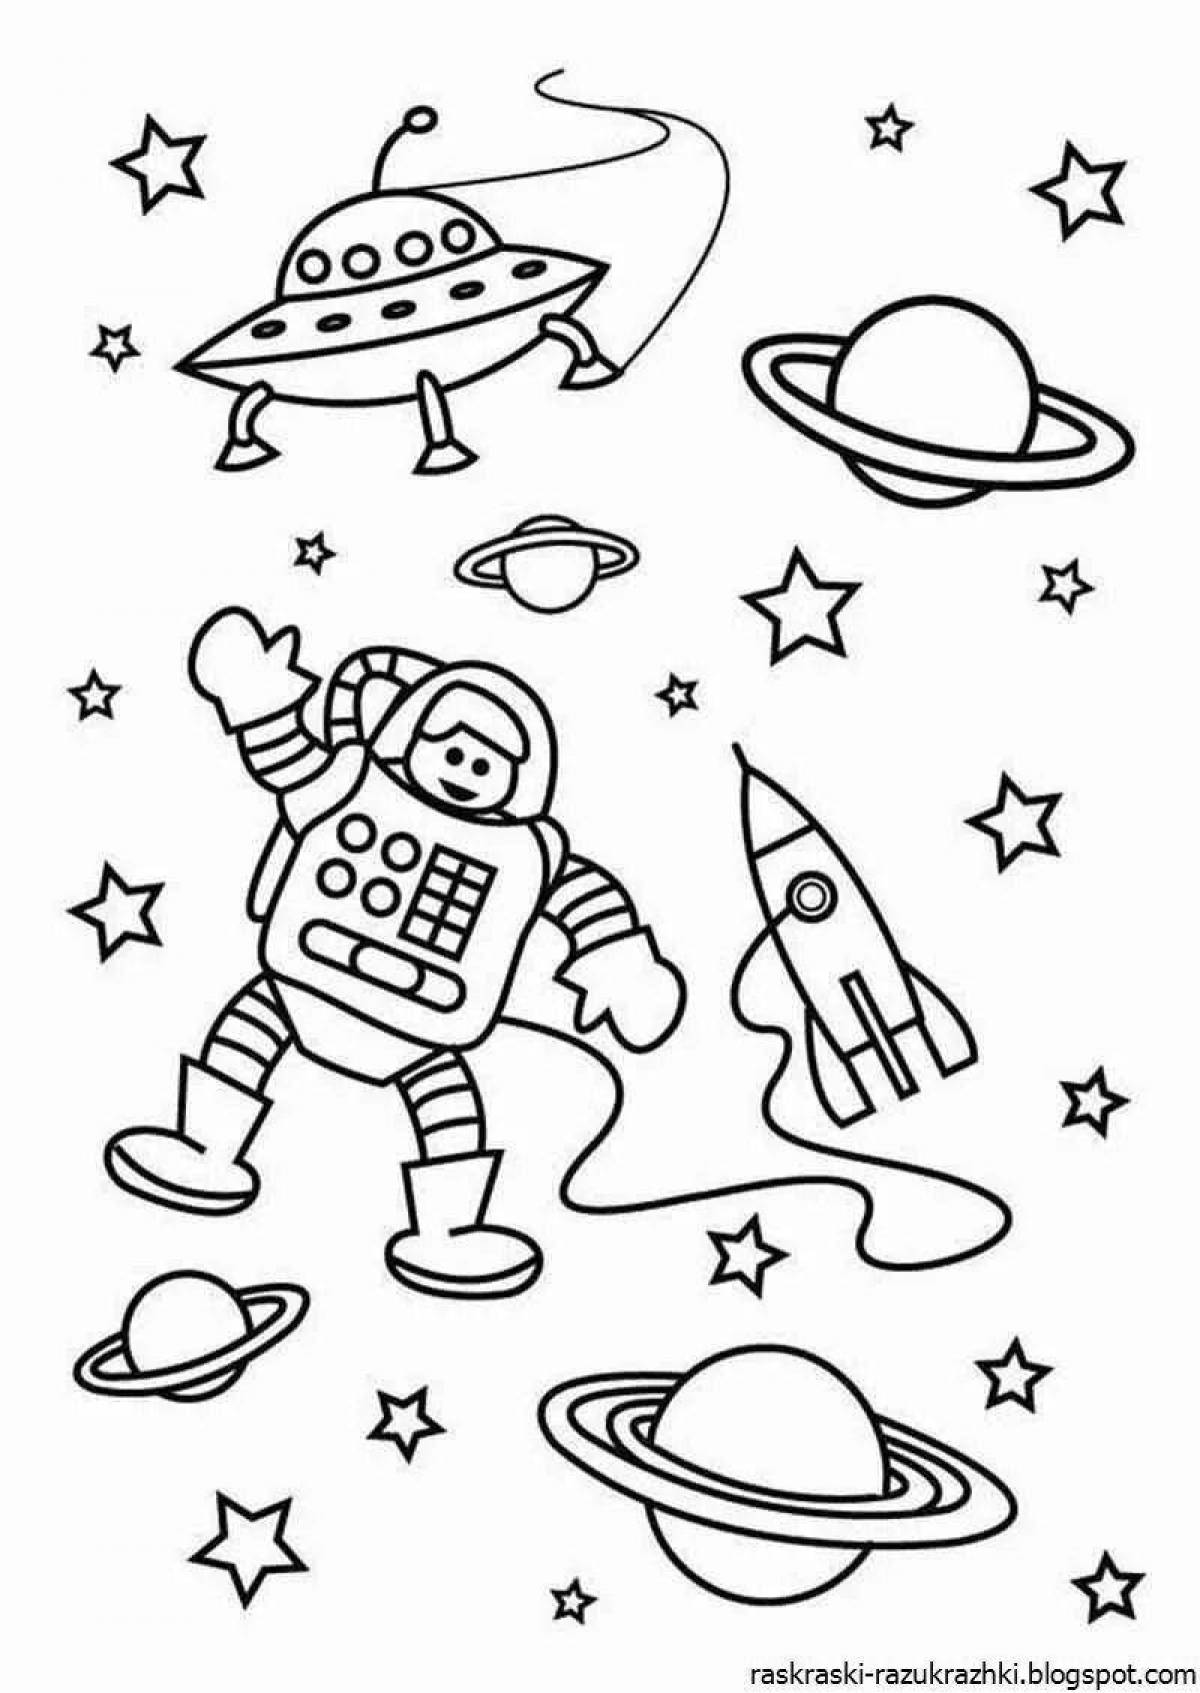 Радостная страница раскраски космоса и планет для детей